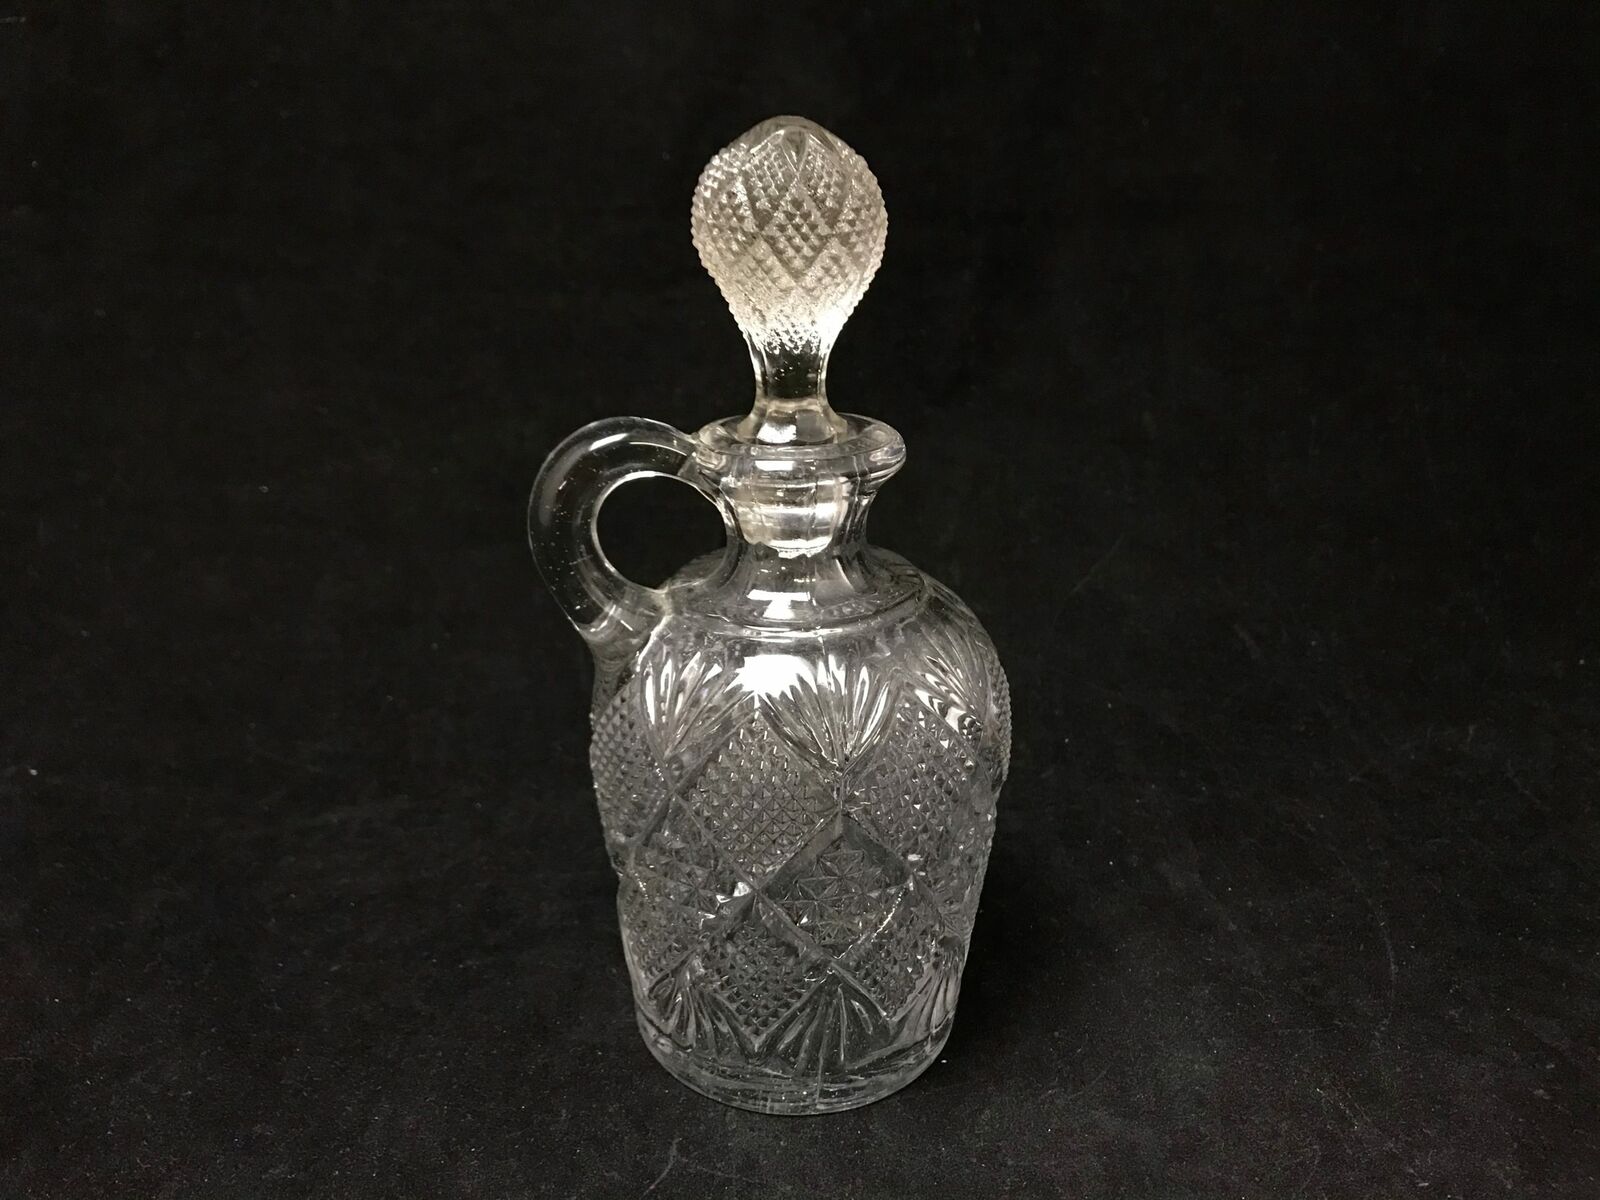 Vintage Pressed Glass Liquor Spirits Glass Decanter Bottle & Stopper |22463